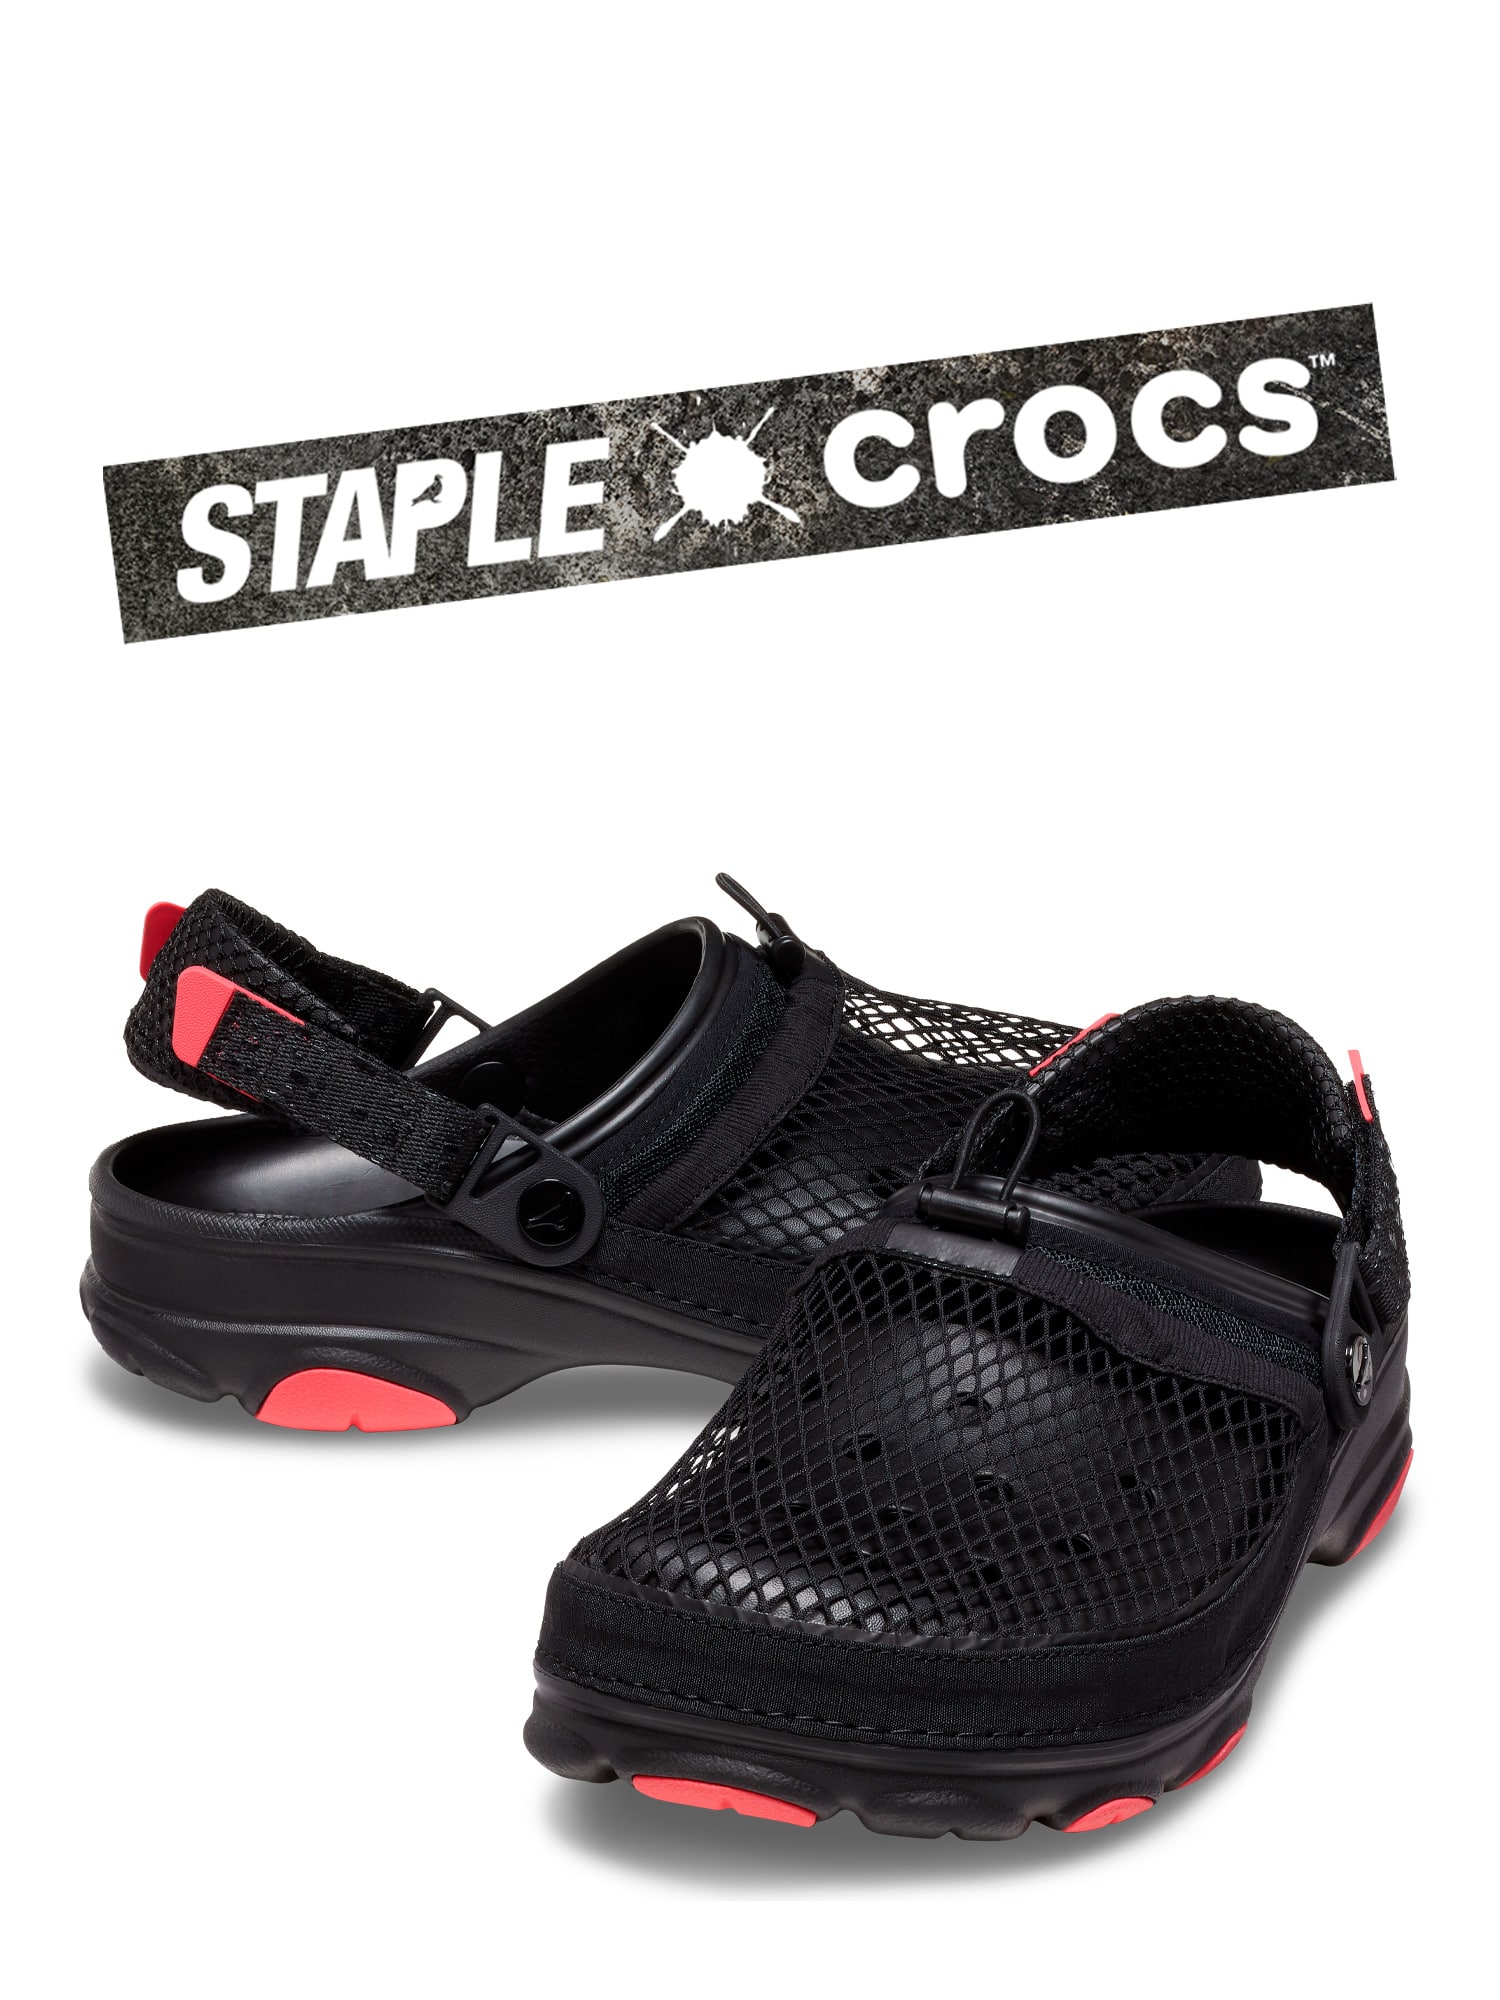 【コラボ】Staple Homing Pigeon × Crocs